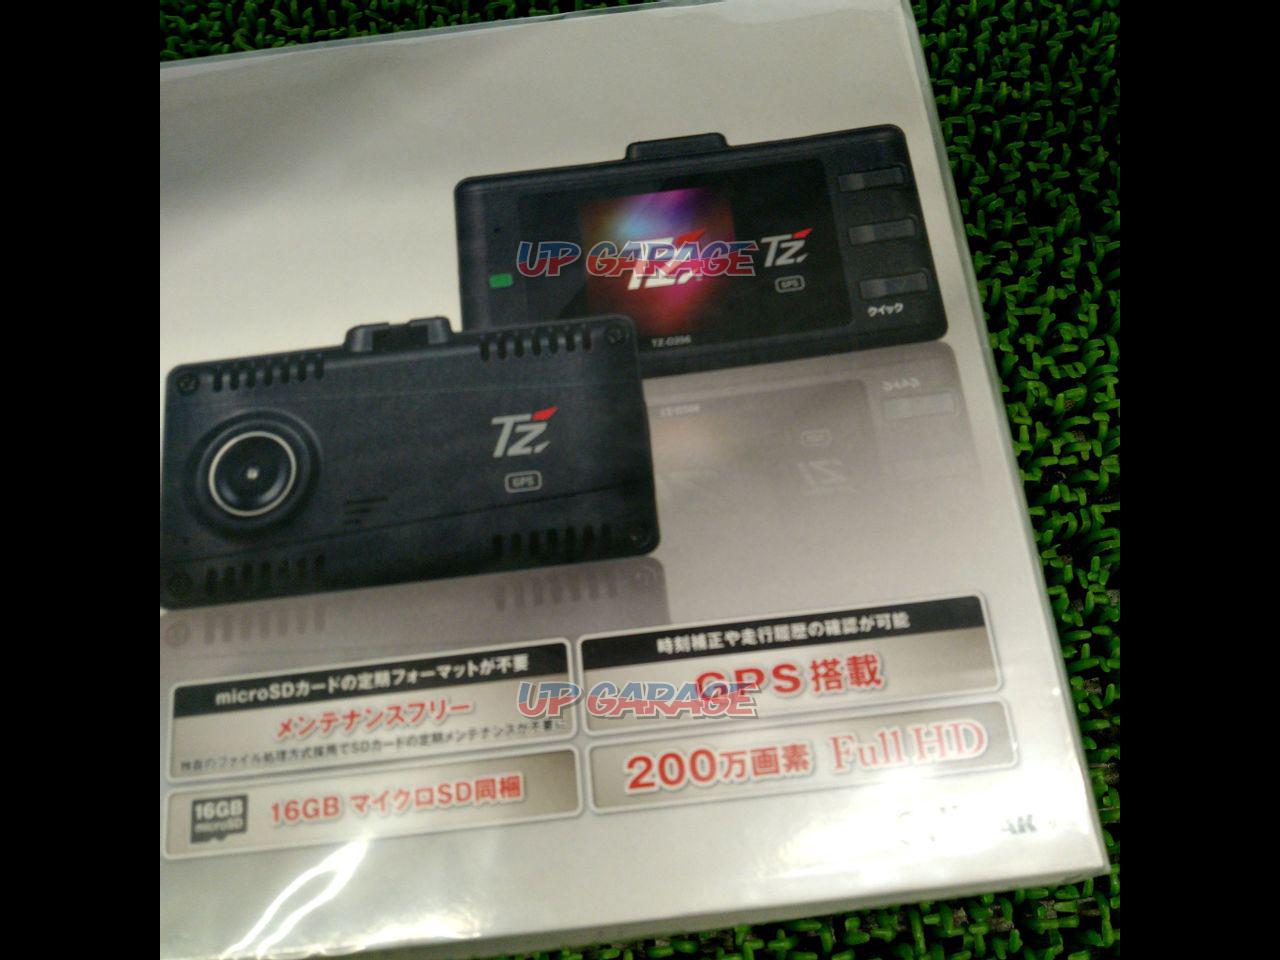 ドライブレコーダー　TZ-D206 新品未開封TZ-D206